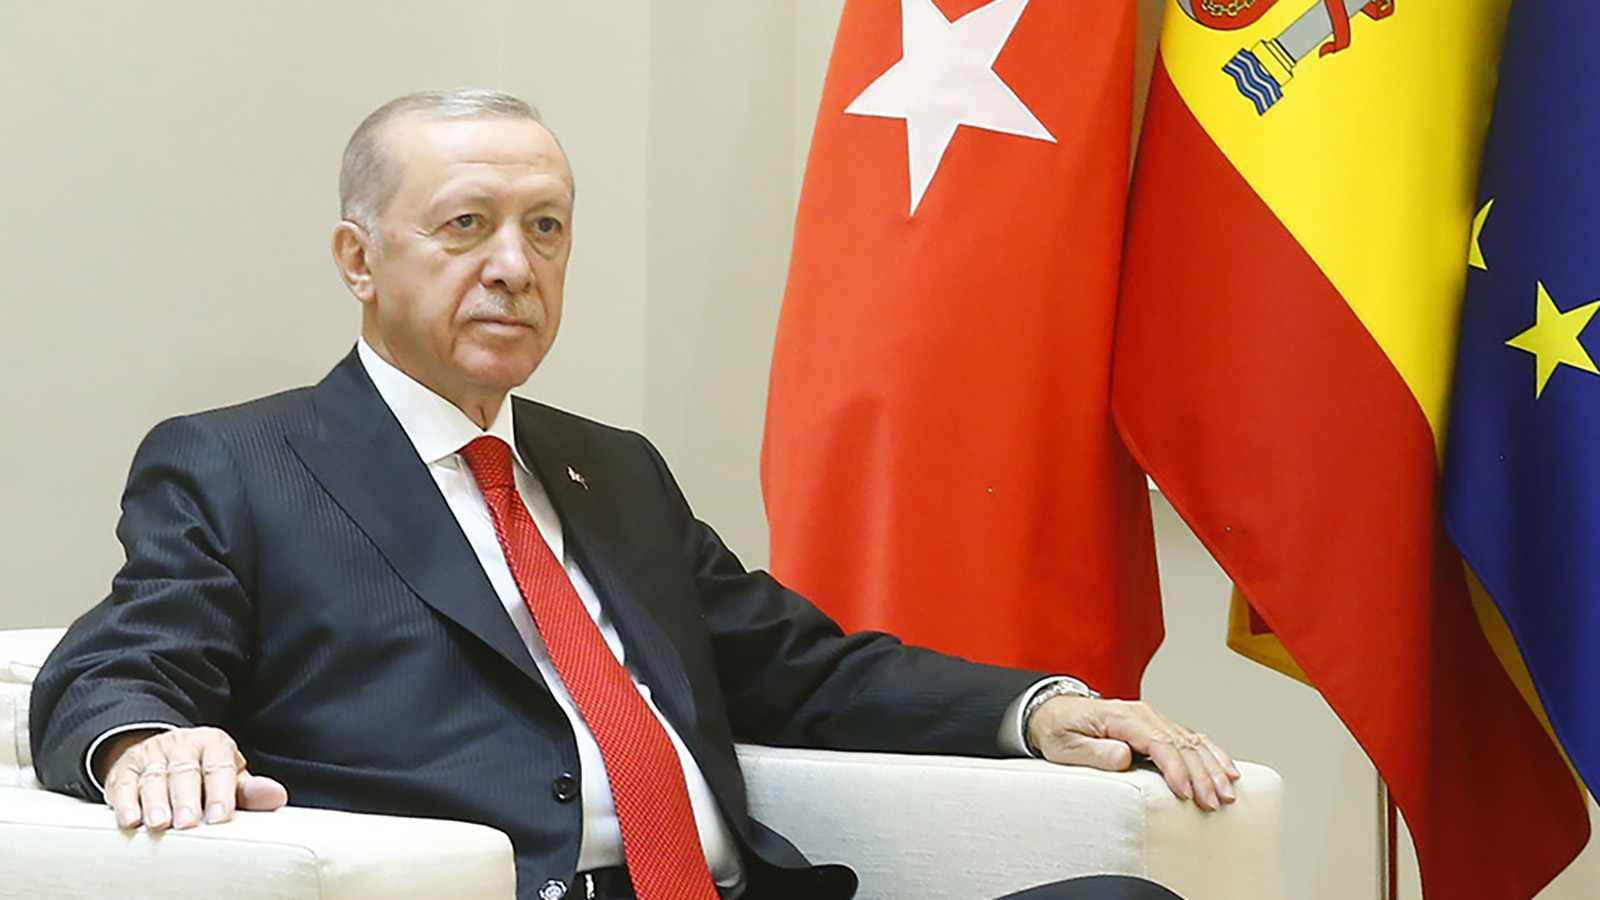 El presidente de la República de Turquía, Recep Tayyip Erdoğan. FOTO: Borja Puig de la Bellacasa